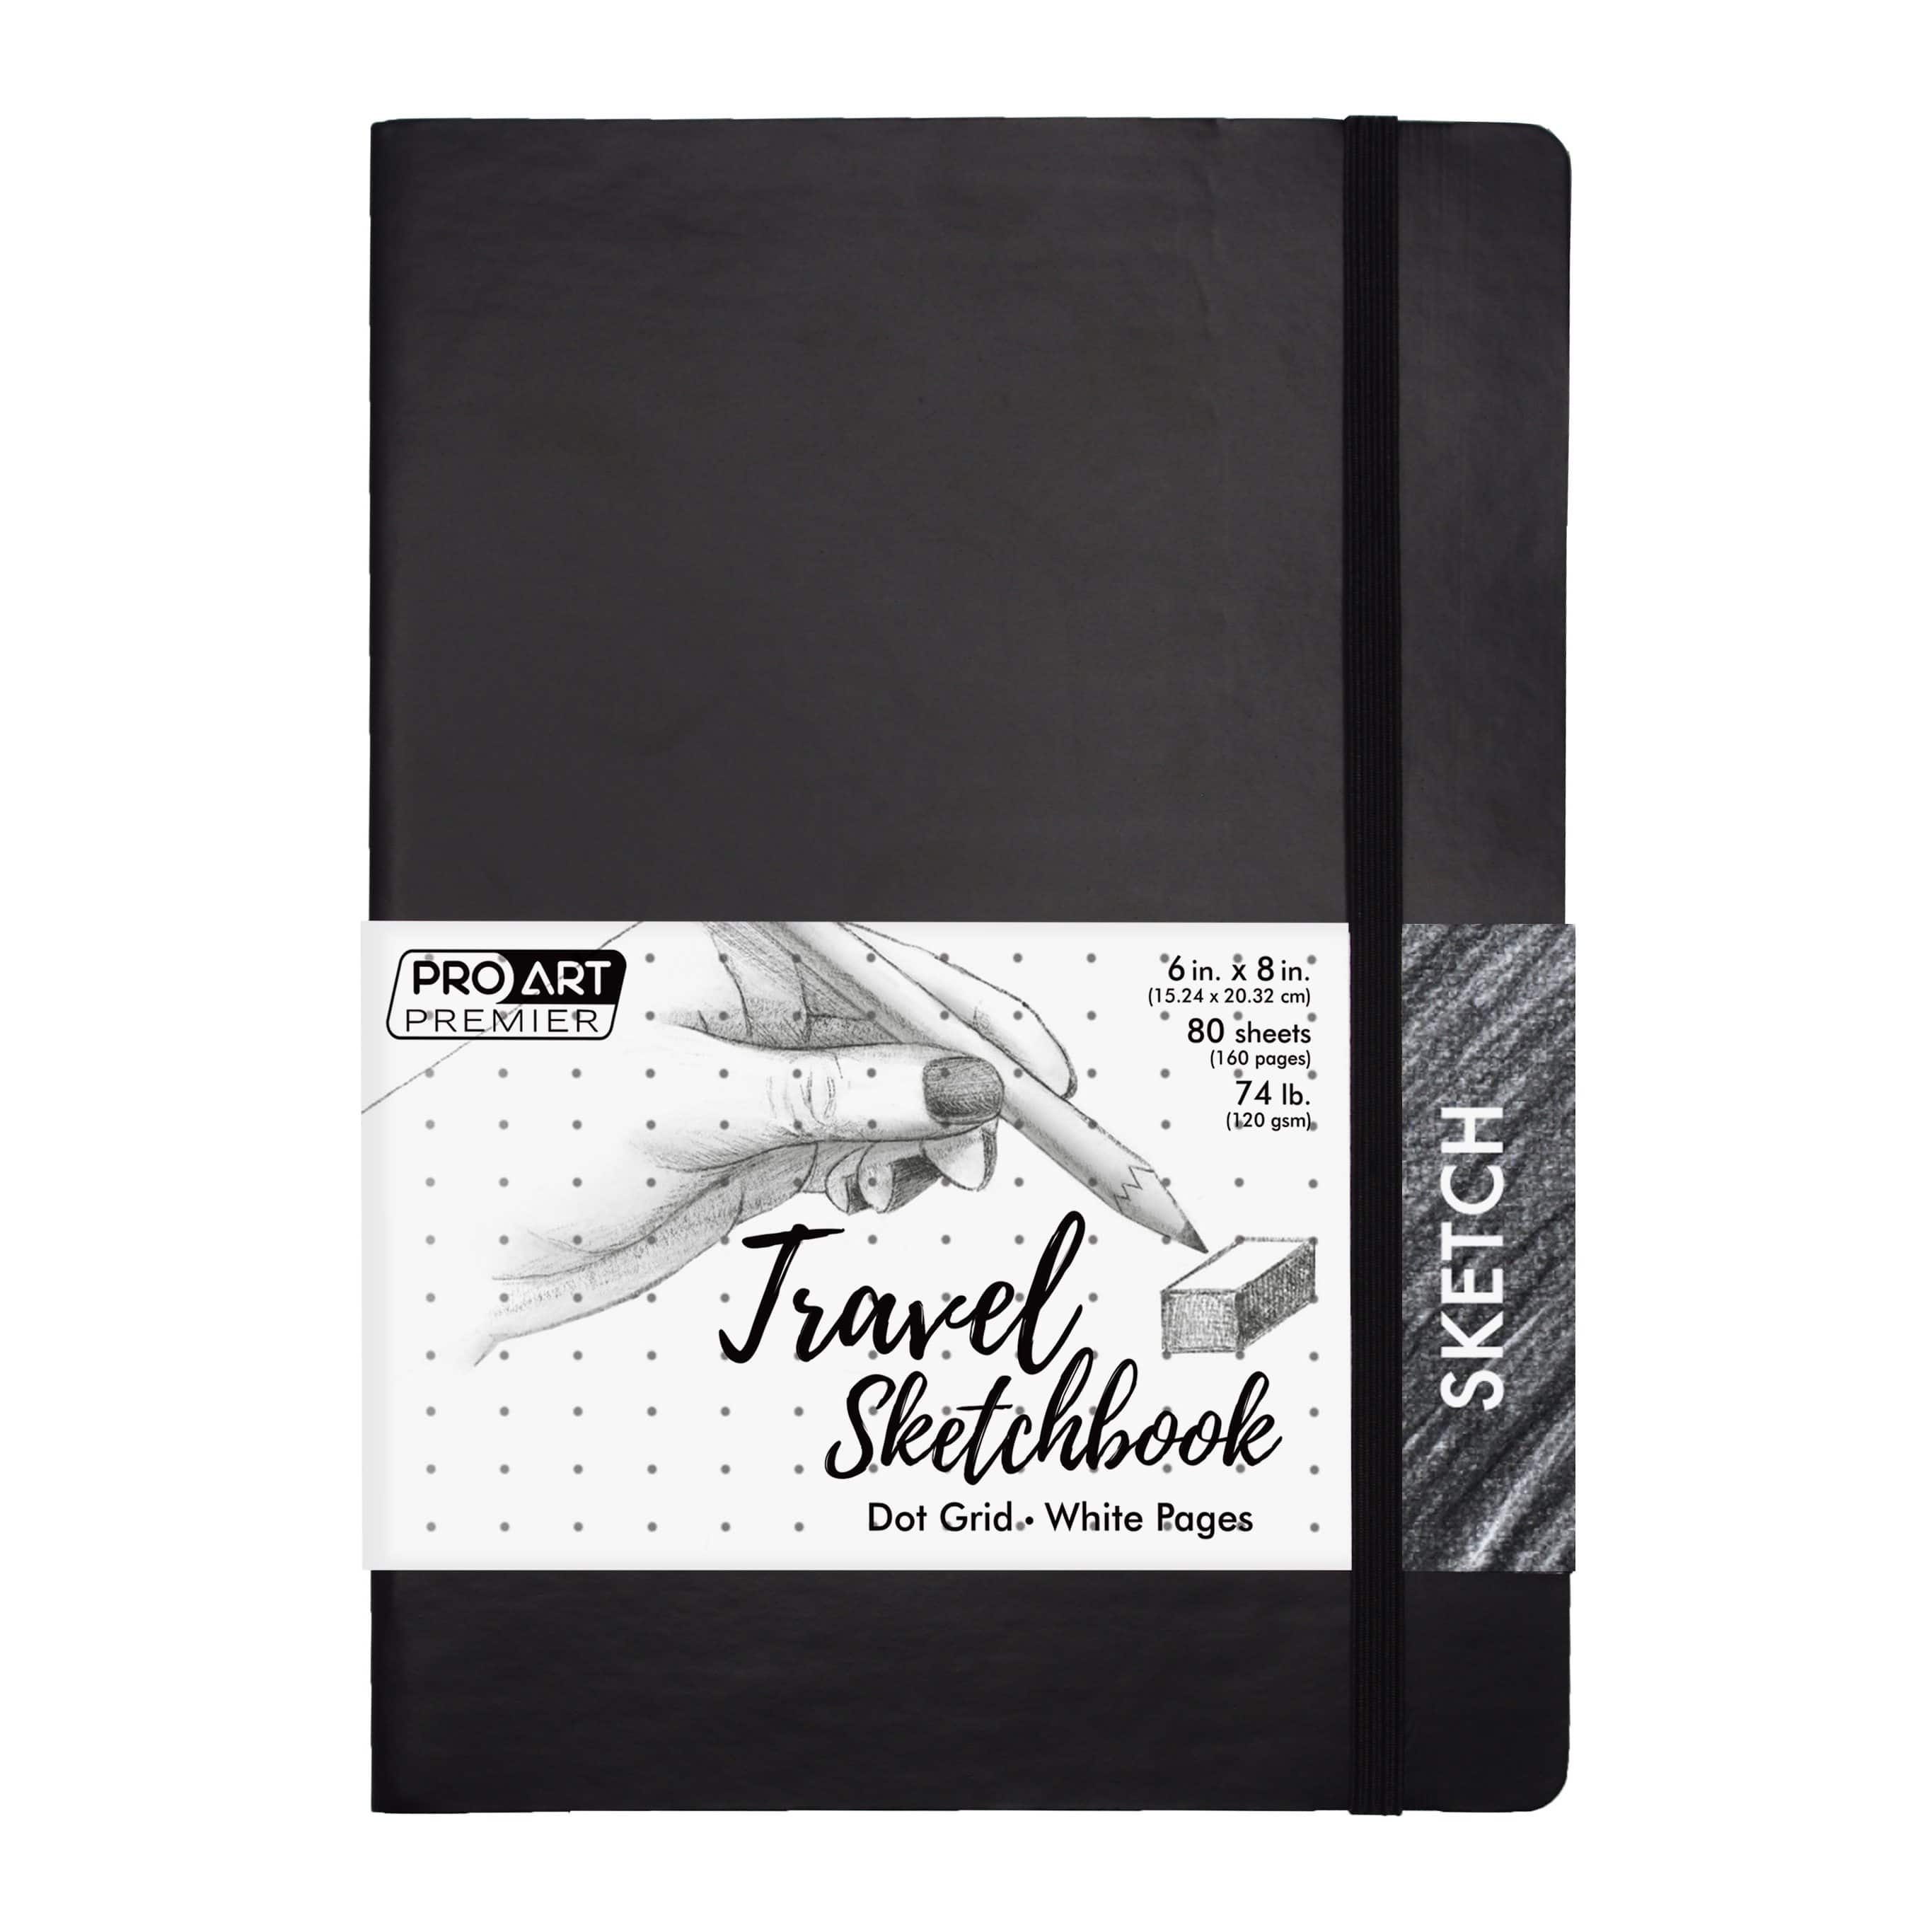 Pro Art® Premier Black Dot Grid Travel Sketchbook, 6'' x 8